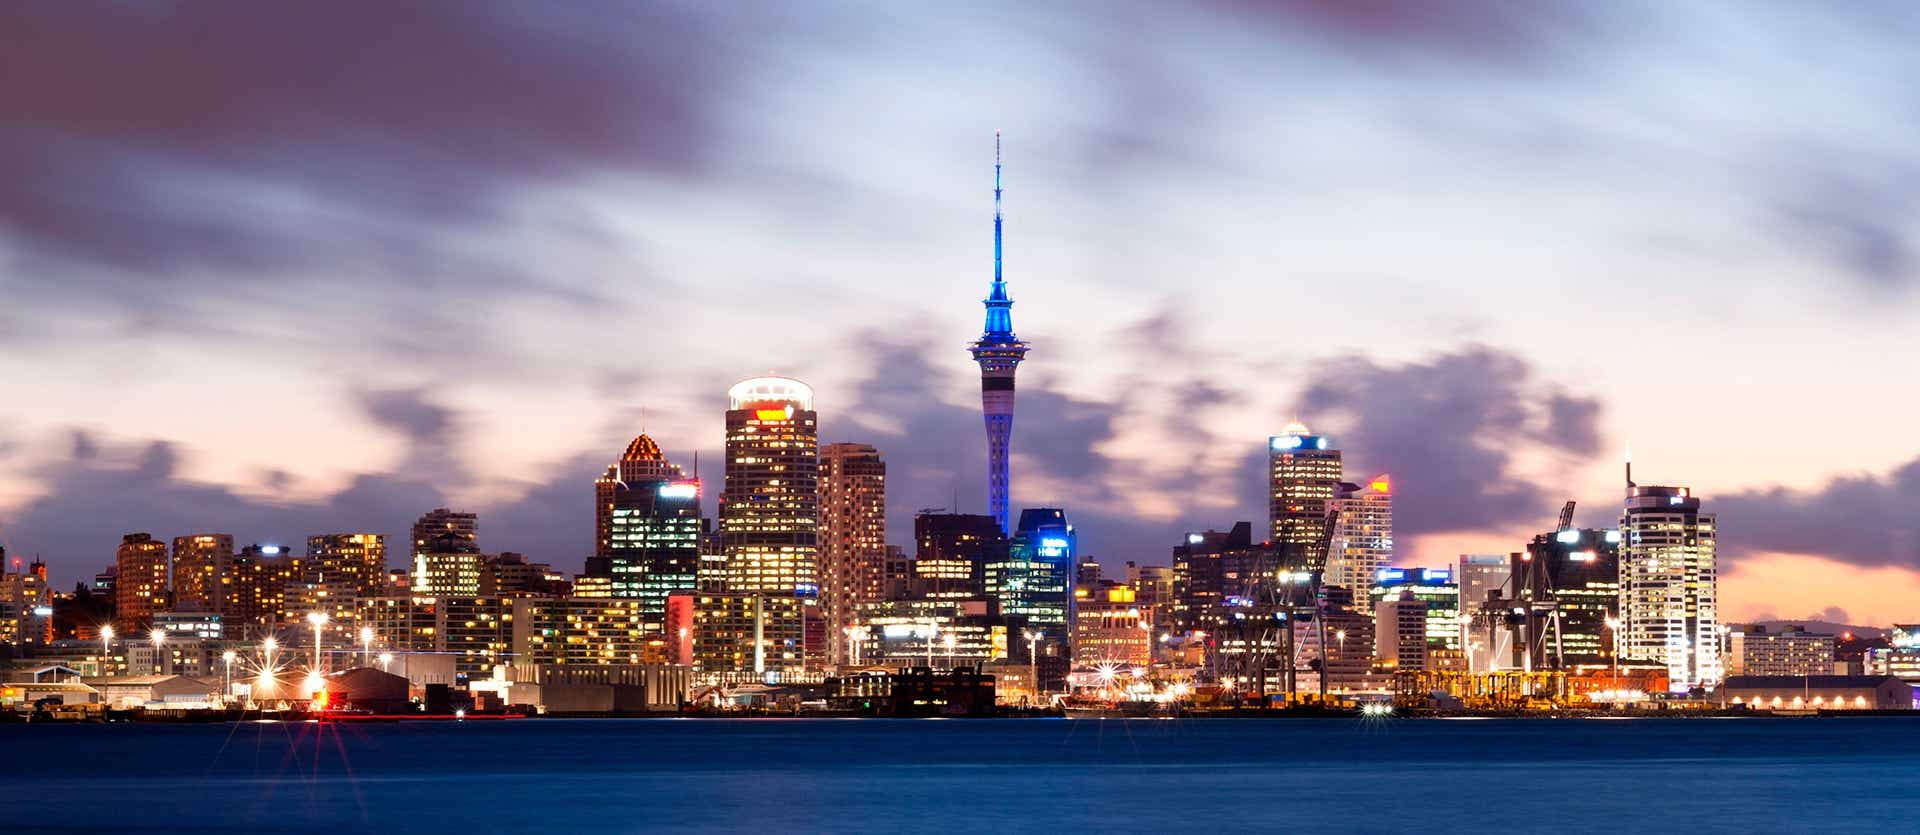 City Skyline <span class="iconos separador"></span> Auckland